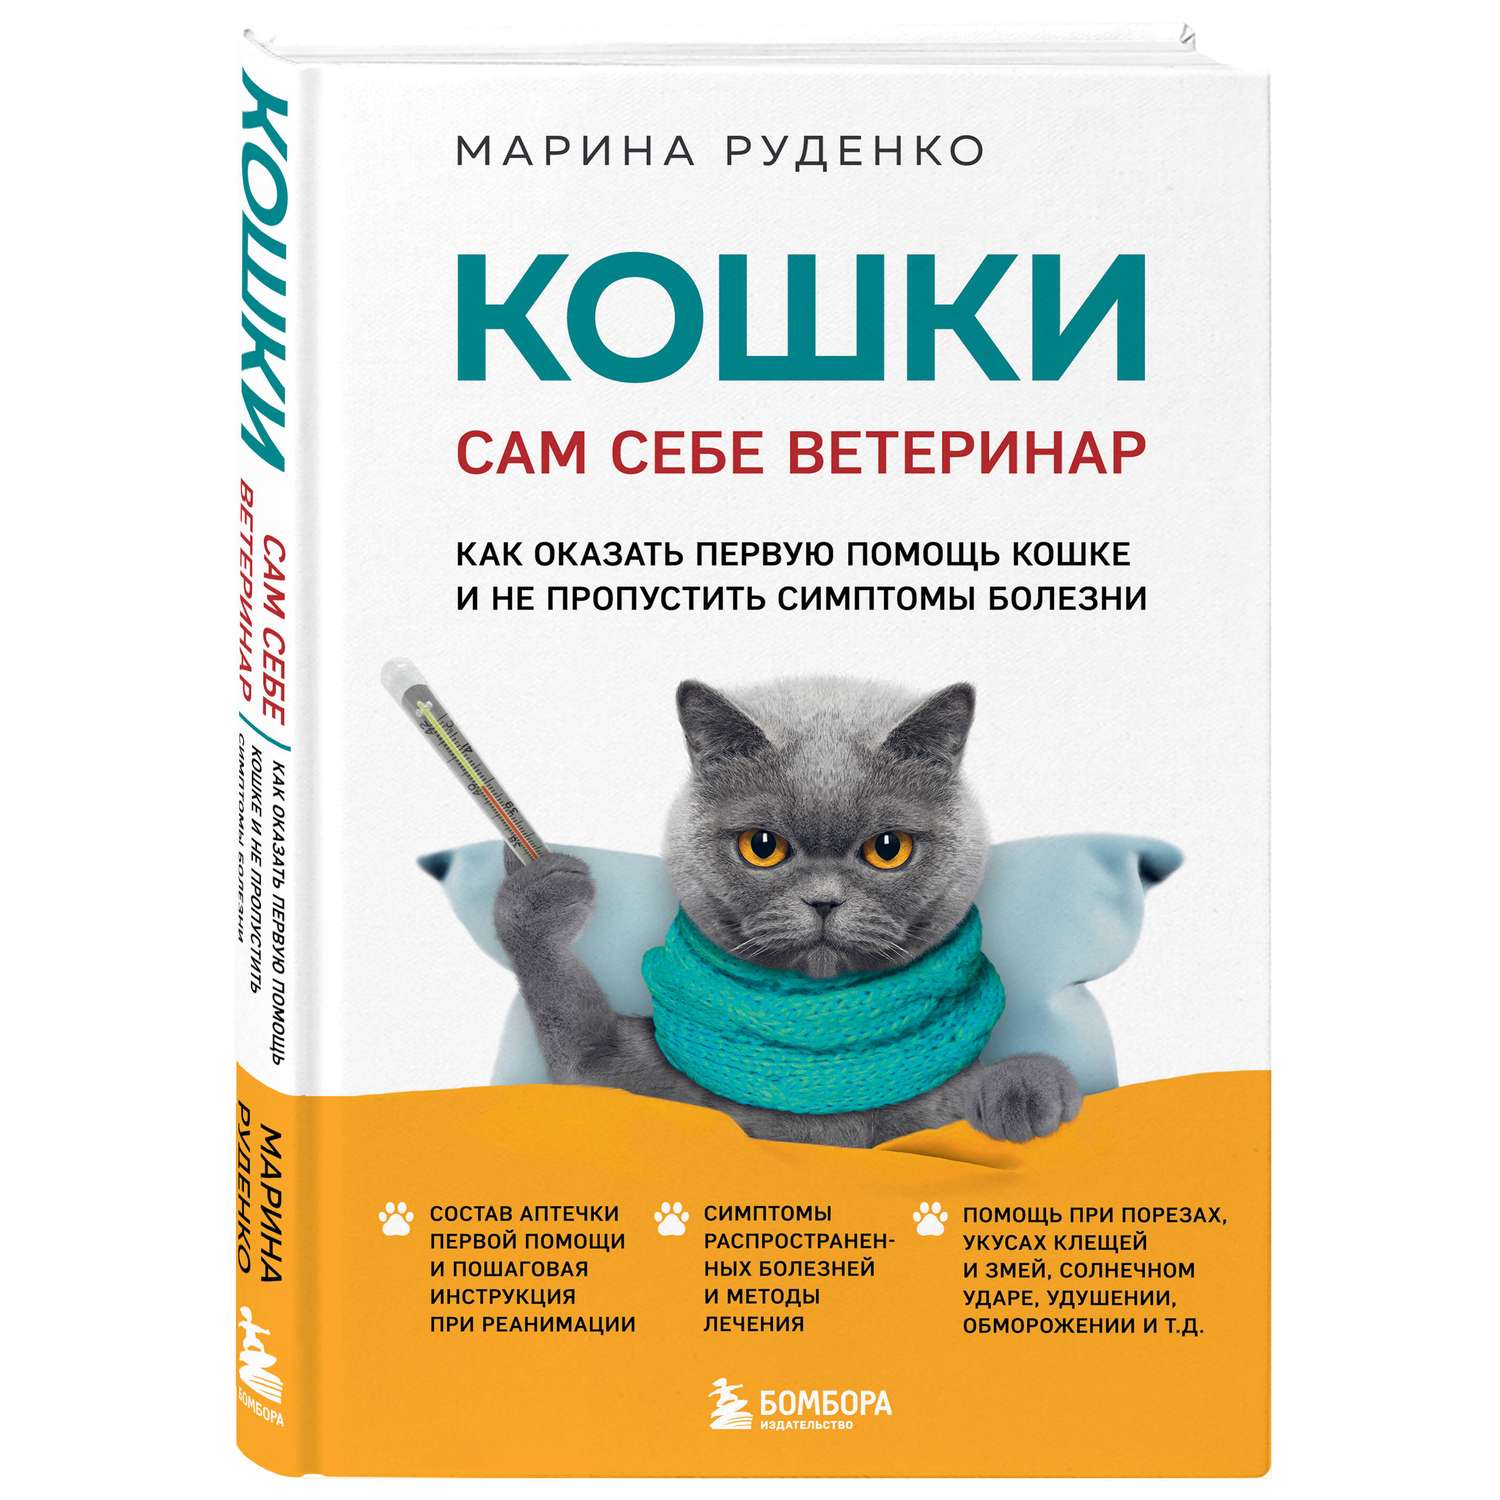 Книга Эксмо Кошки Сам себе ветеринар Как оказать первую помощь кошке и не пропустить симптомы болезни - фото 1